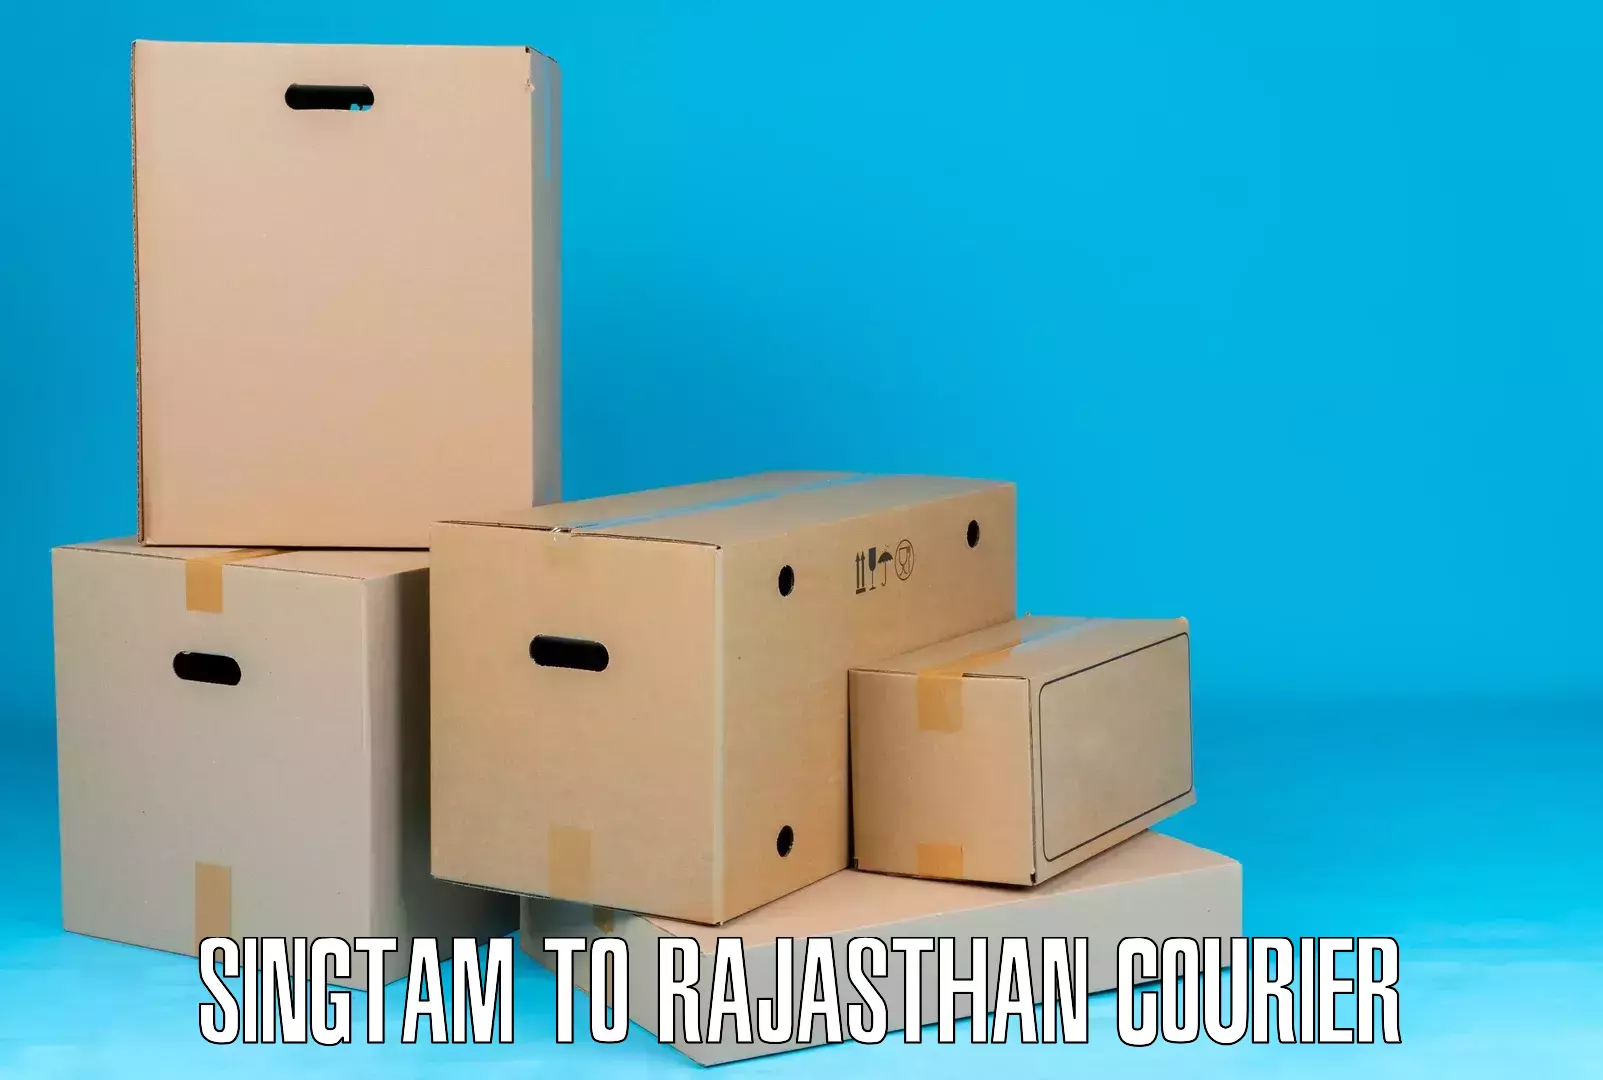 Door-to-door shipment Singtam to Rajasthan